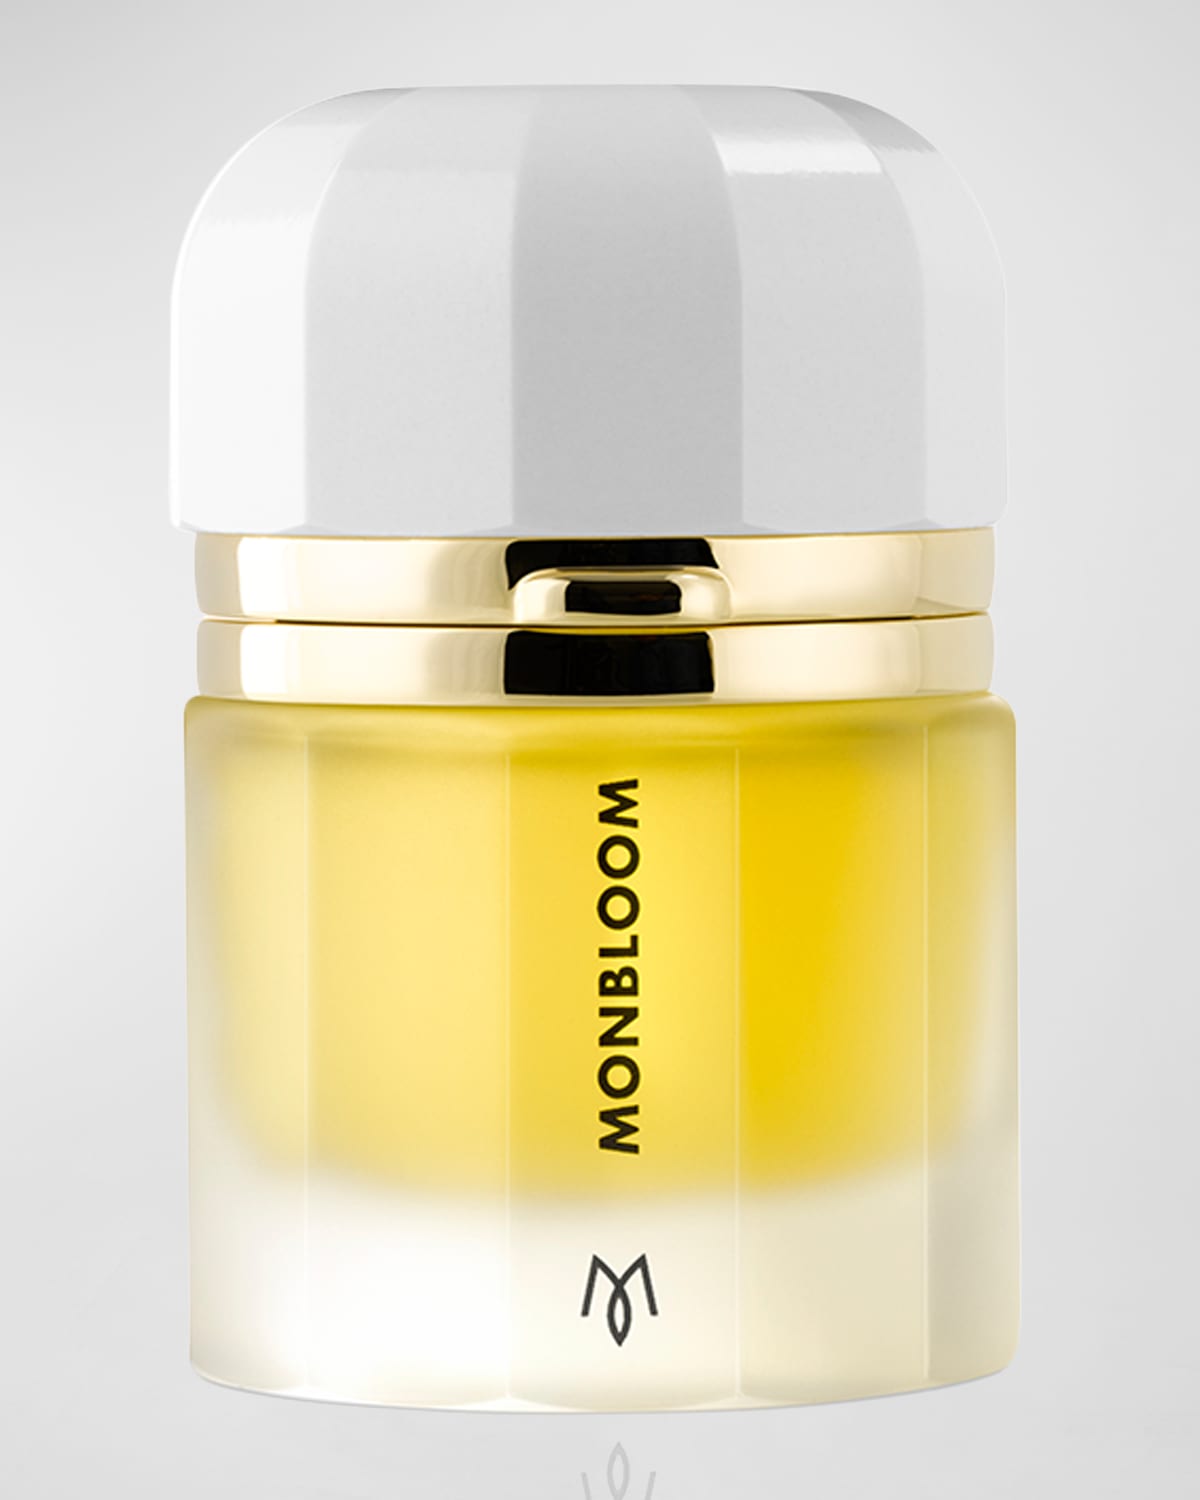 Monbloom Eau de Parfum, 1.7 oz./ 50 mL